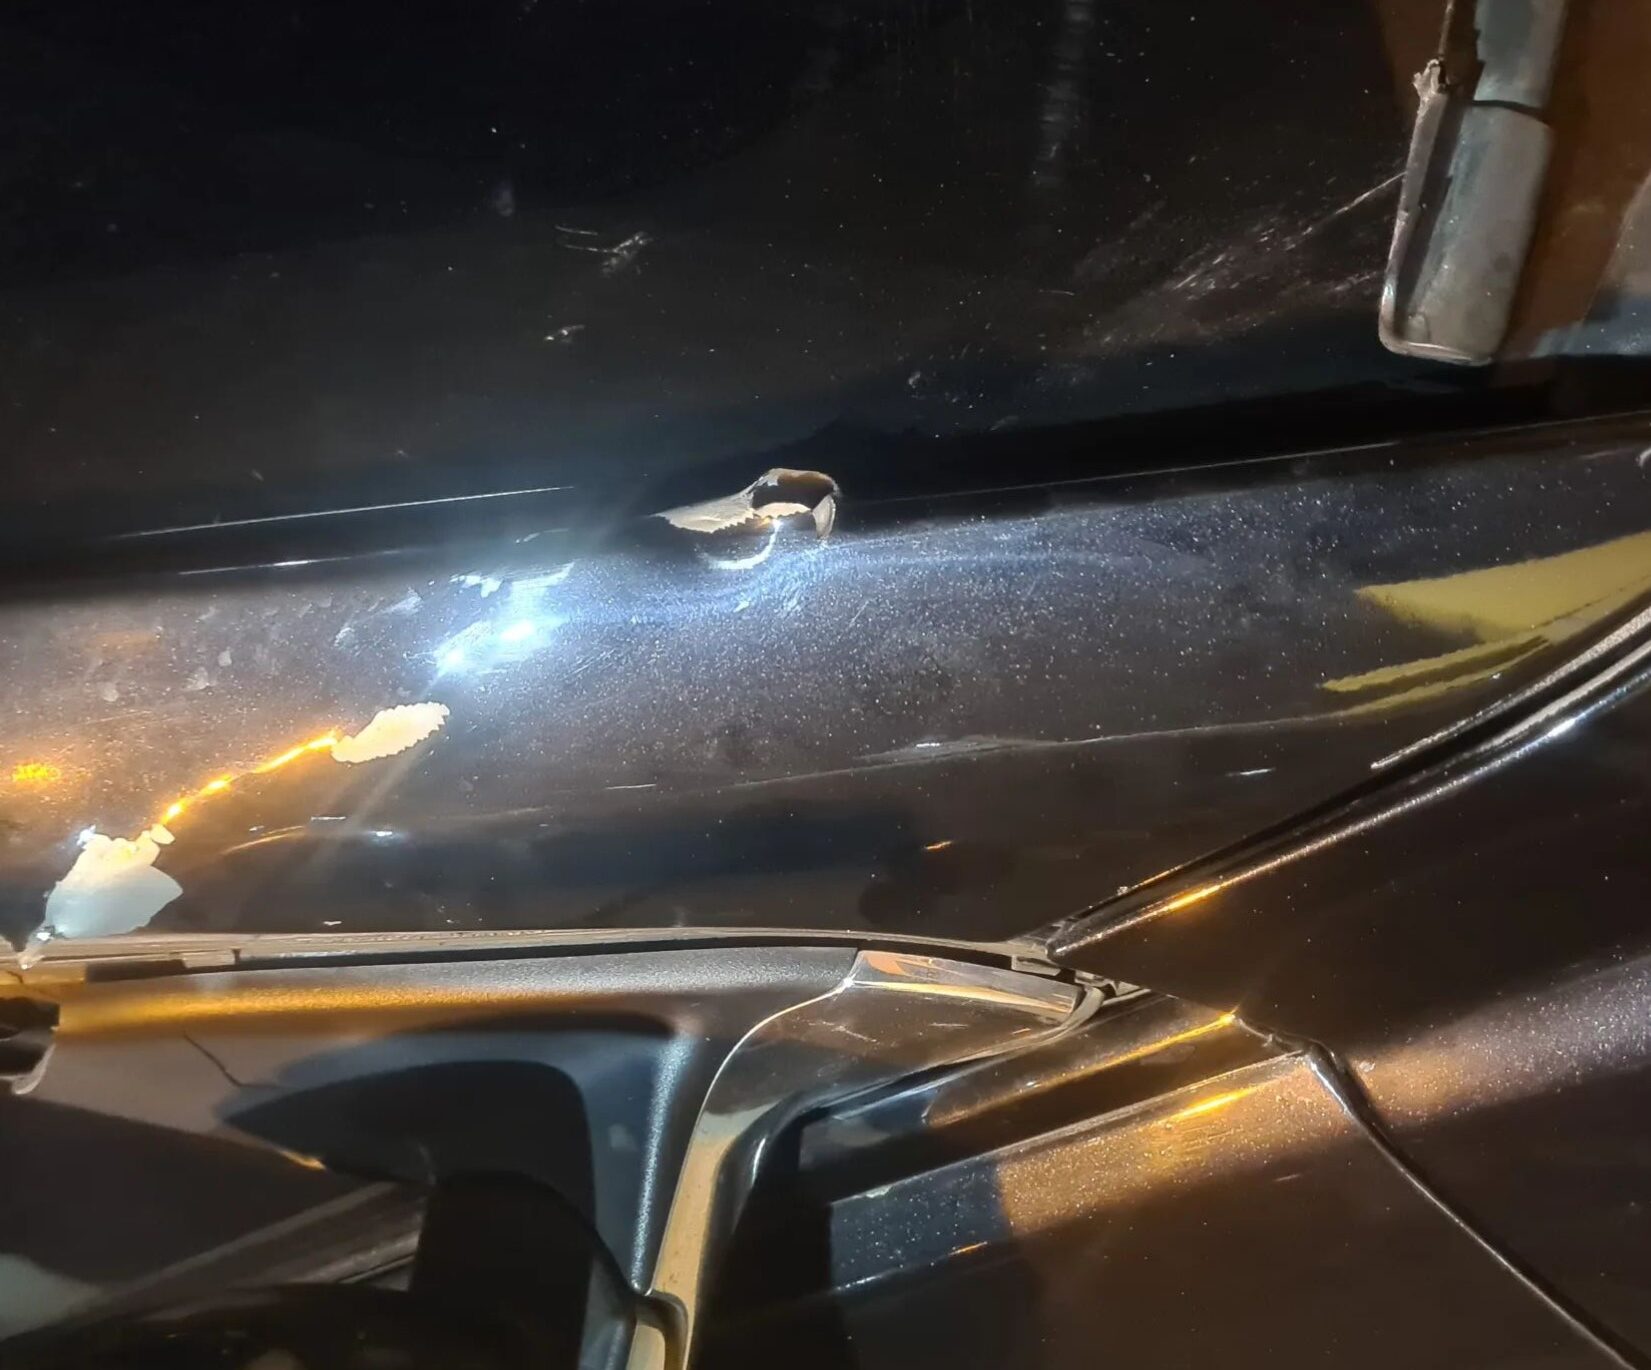 Marcas de bala de fuzil no carro do deputado, que é blindado | Foto divulgada pelo deputado